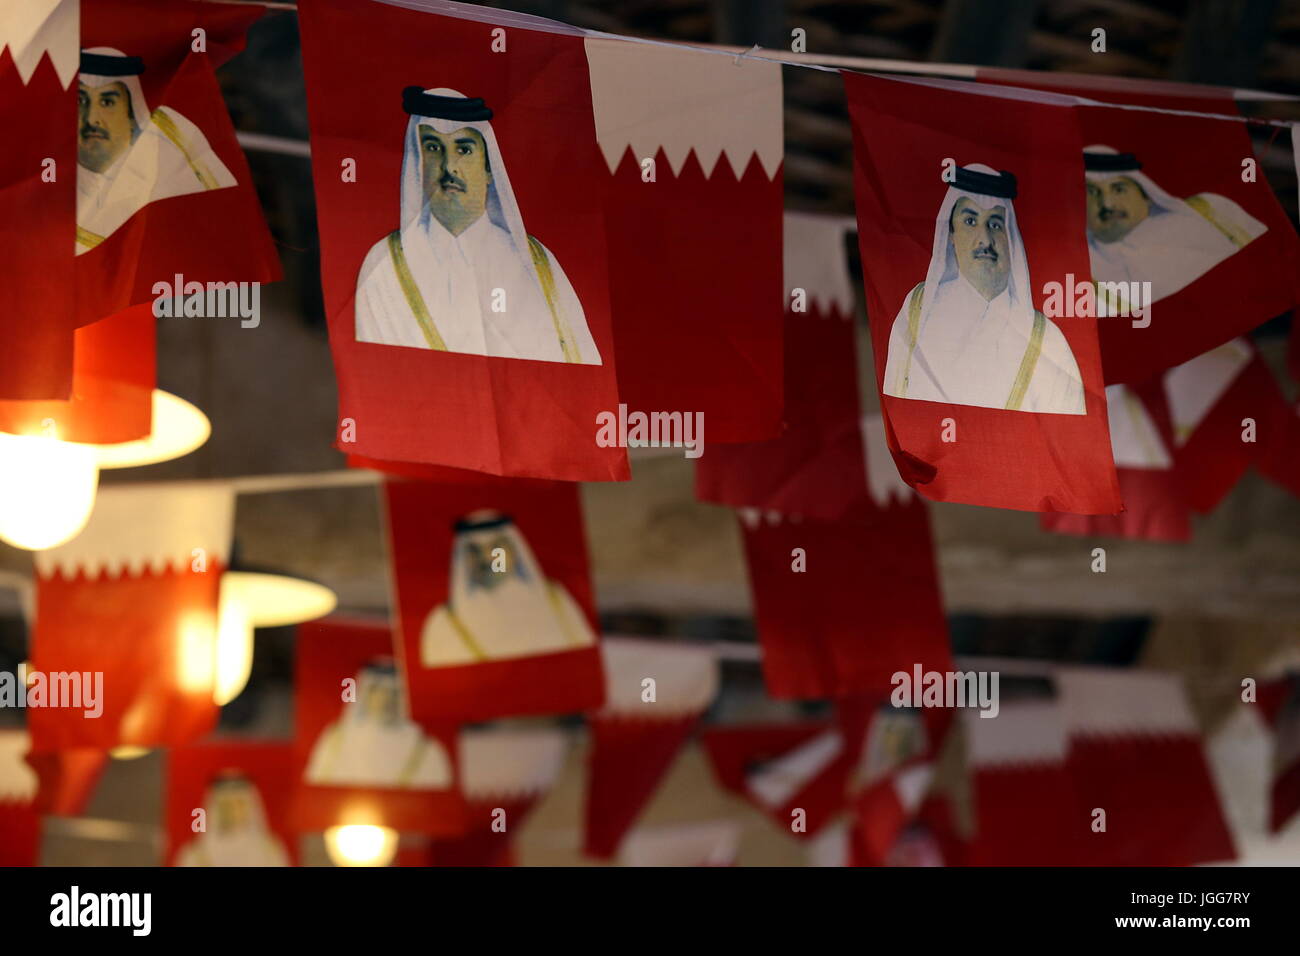 DOHA, Qatar - 6 Luglio 2017: bandiere Ntional stampati con immagini del Qatar Emiro Sheikh Tamim Bin Hamad Al Thani sono infilati attraverso il soffitto nel Souq Waqif mercato durante la crisi diplomatica tra Qatar e stati arabi limitrofi Foto Stock